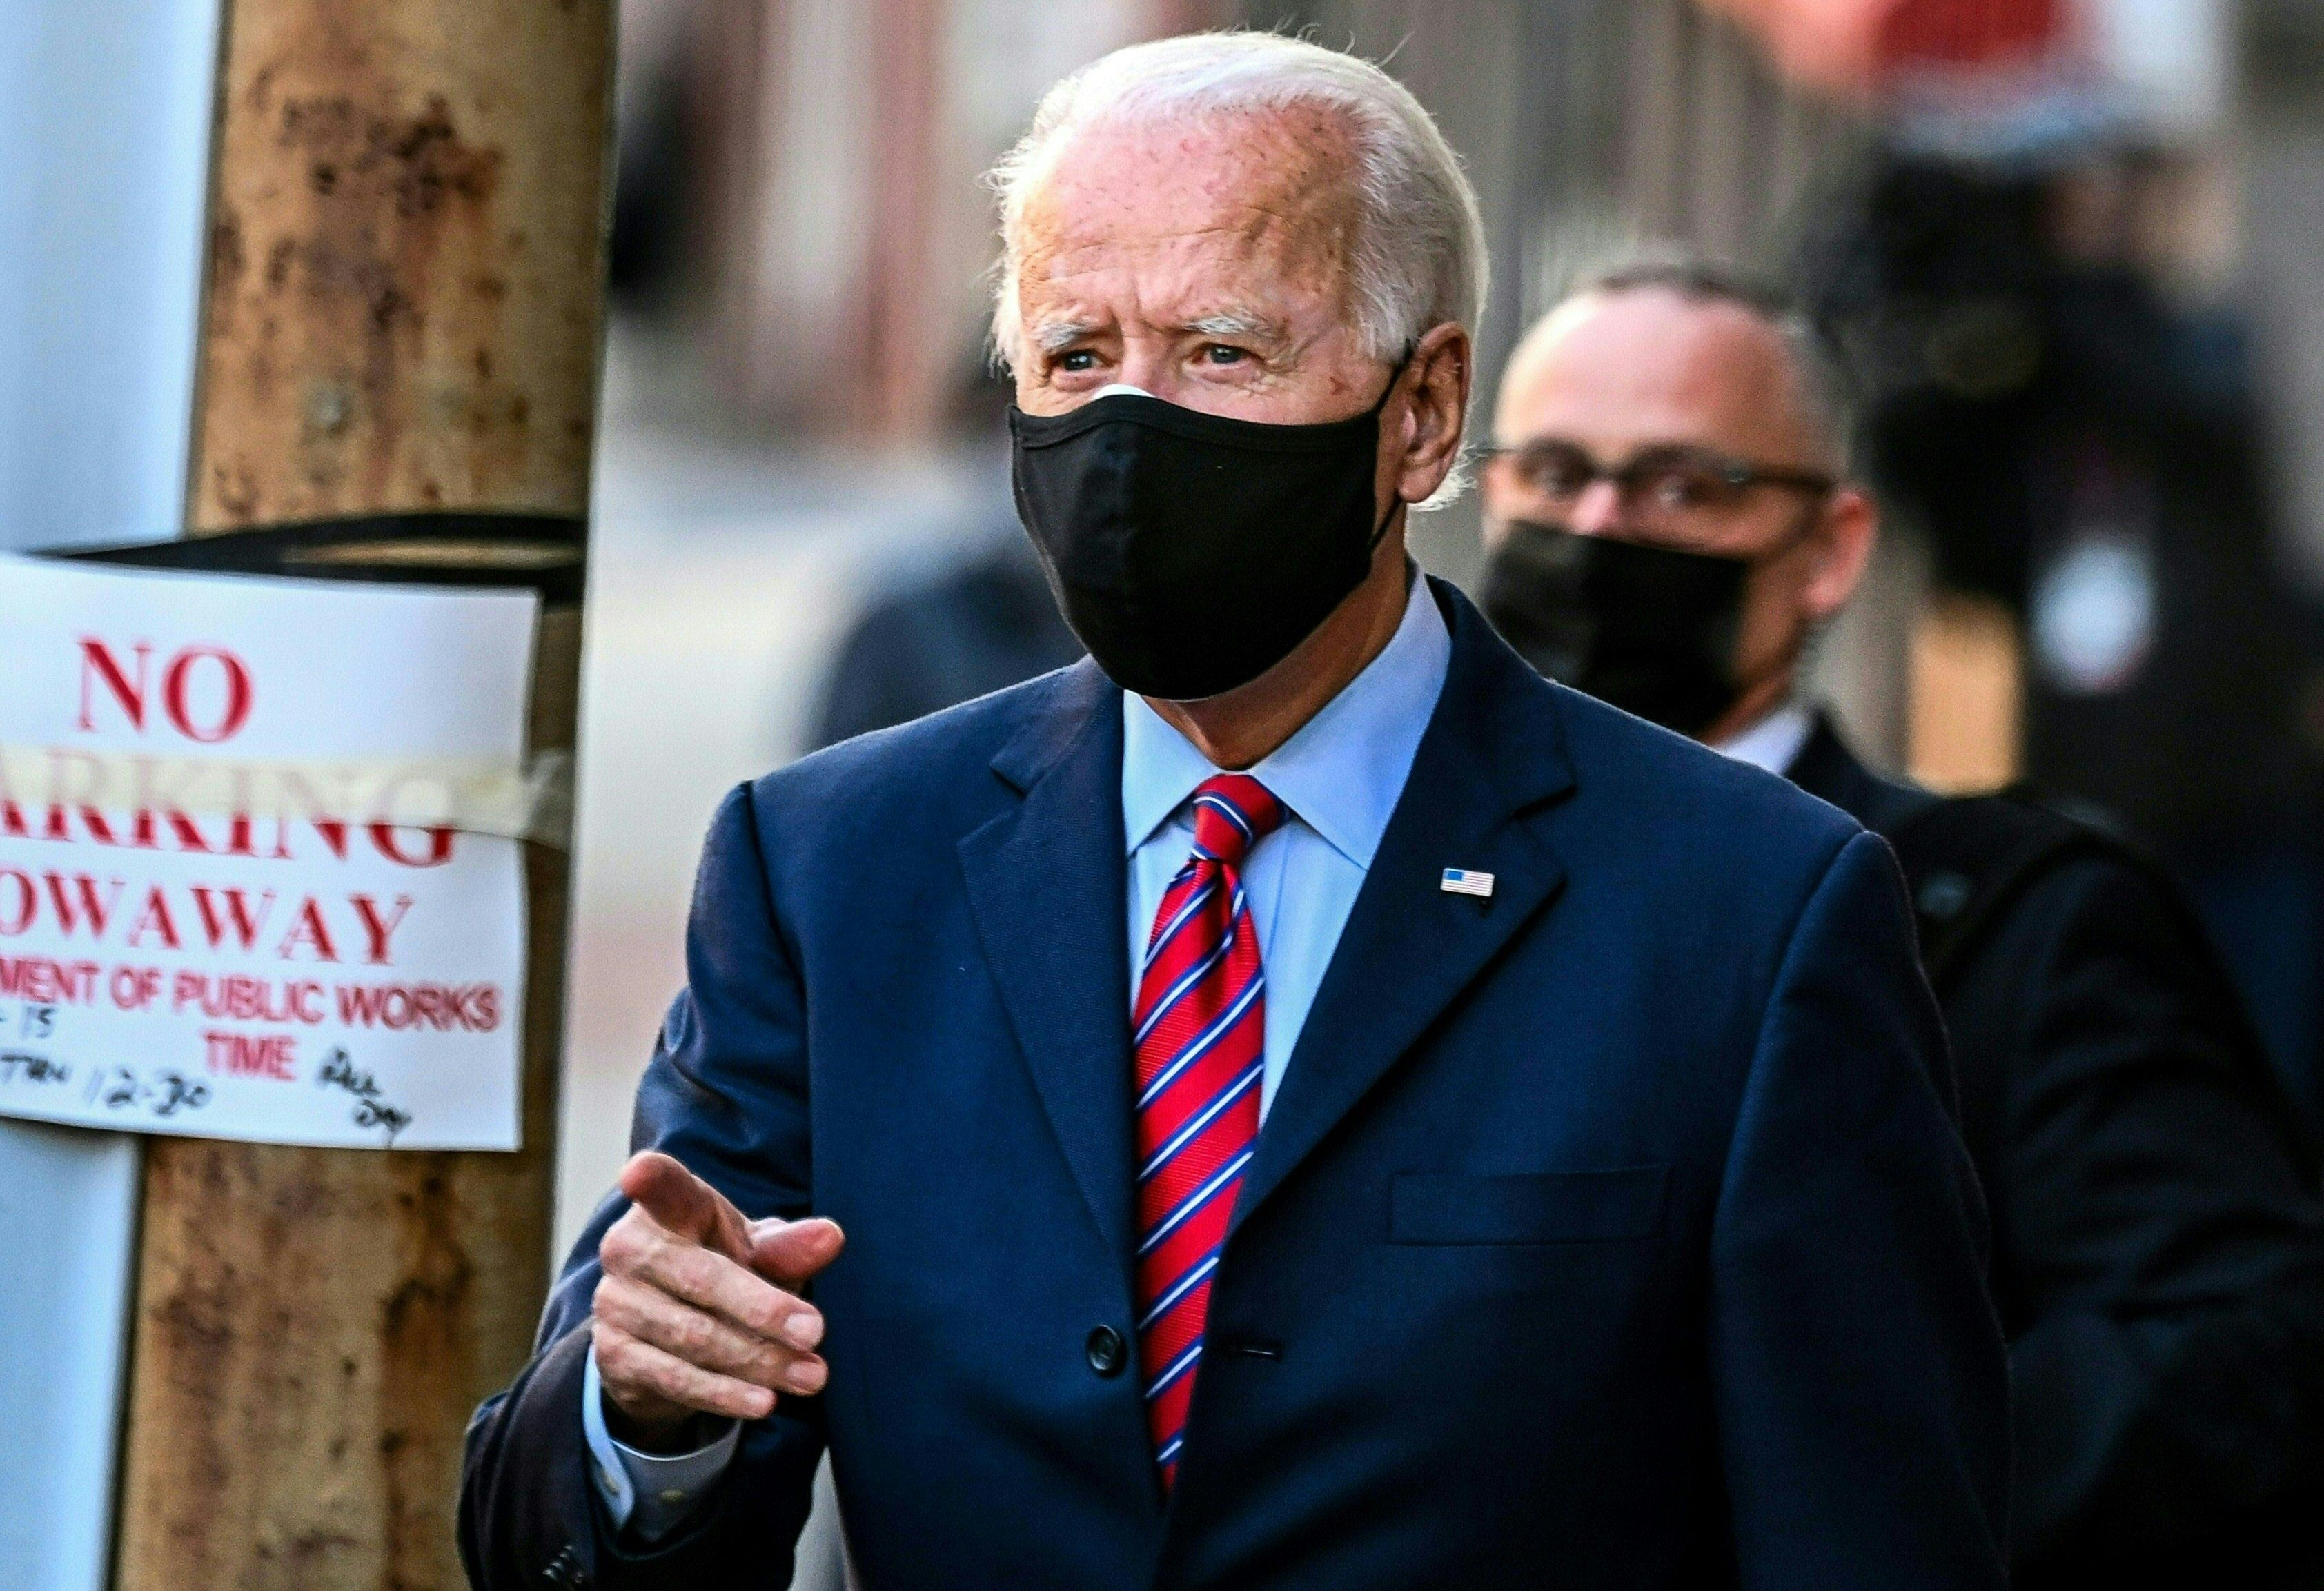 El presidente electo de los Estados Unidos es Joe Biden, quien tomaría posesión el 20 de enero de 2021. (Foto Prensa Libre: AFP)